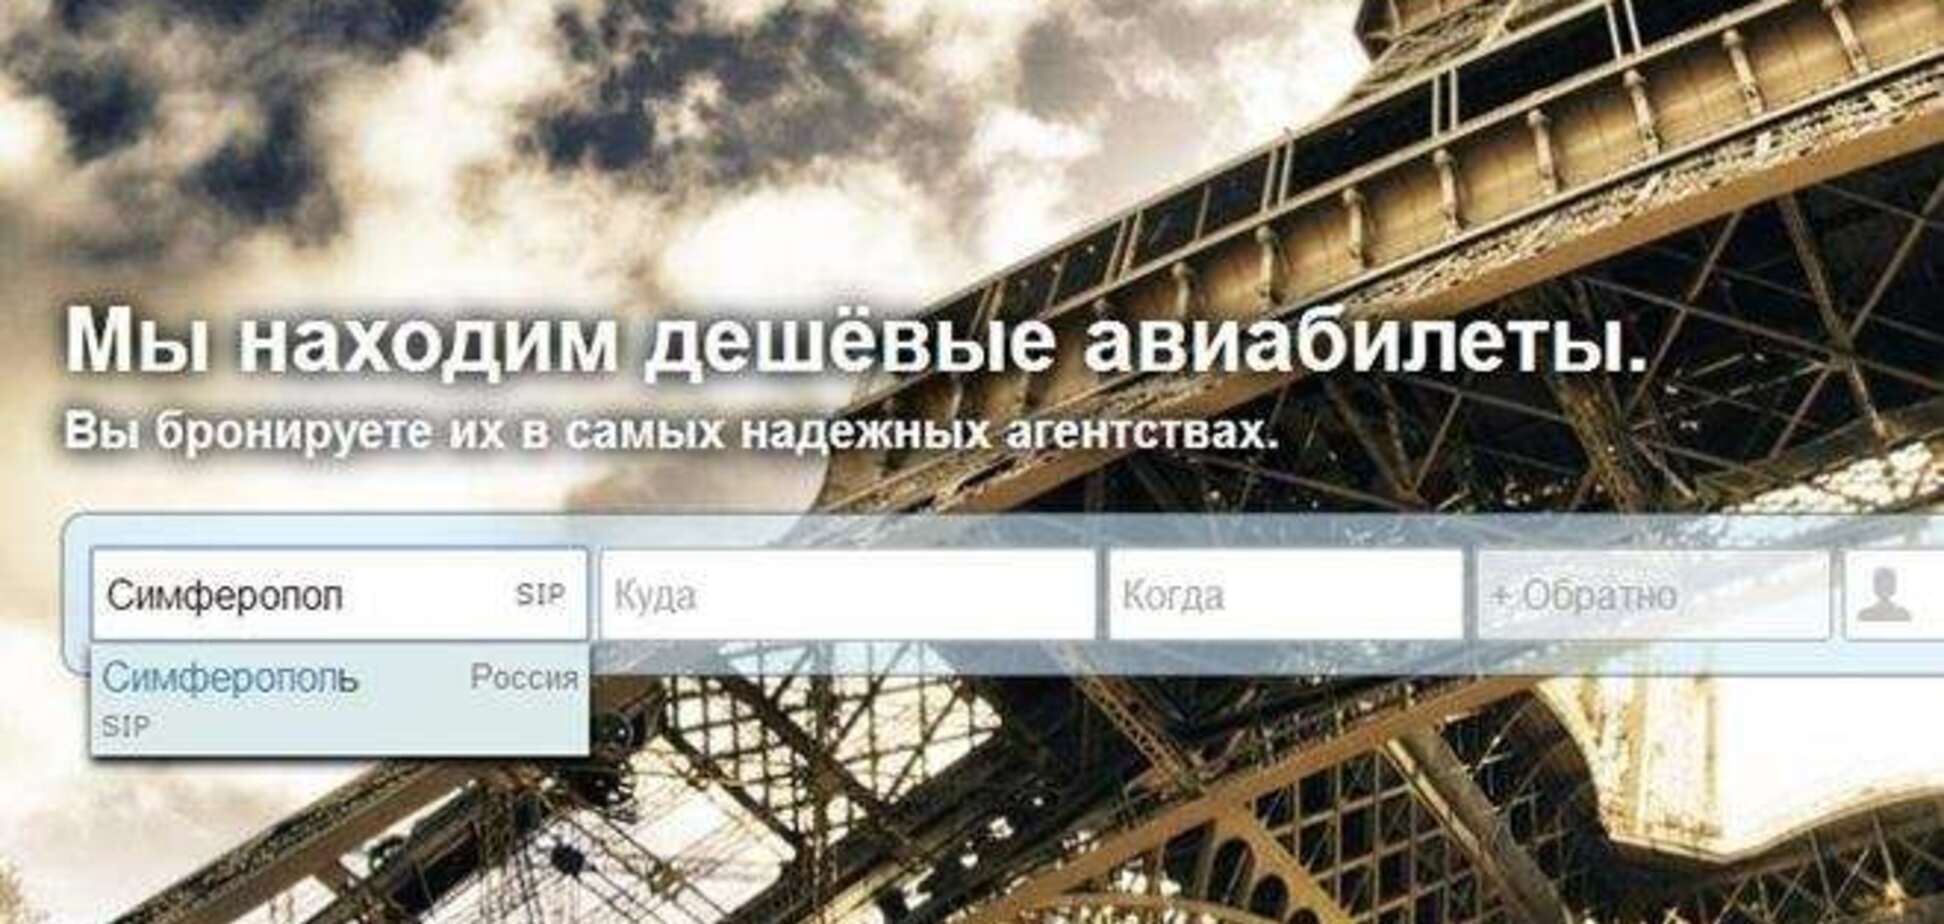 Российский поисковик авиабилетов уже называет Симферополь Россией